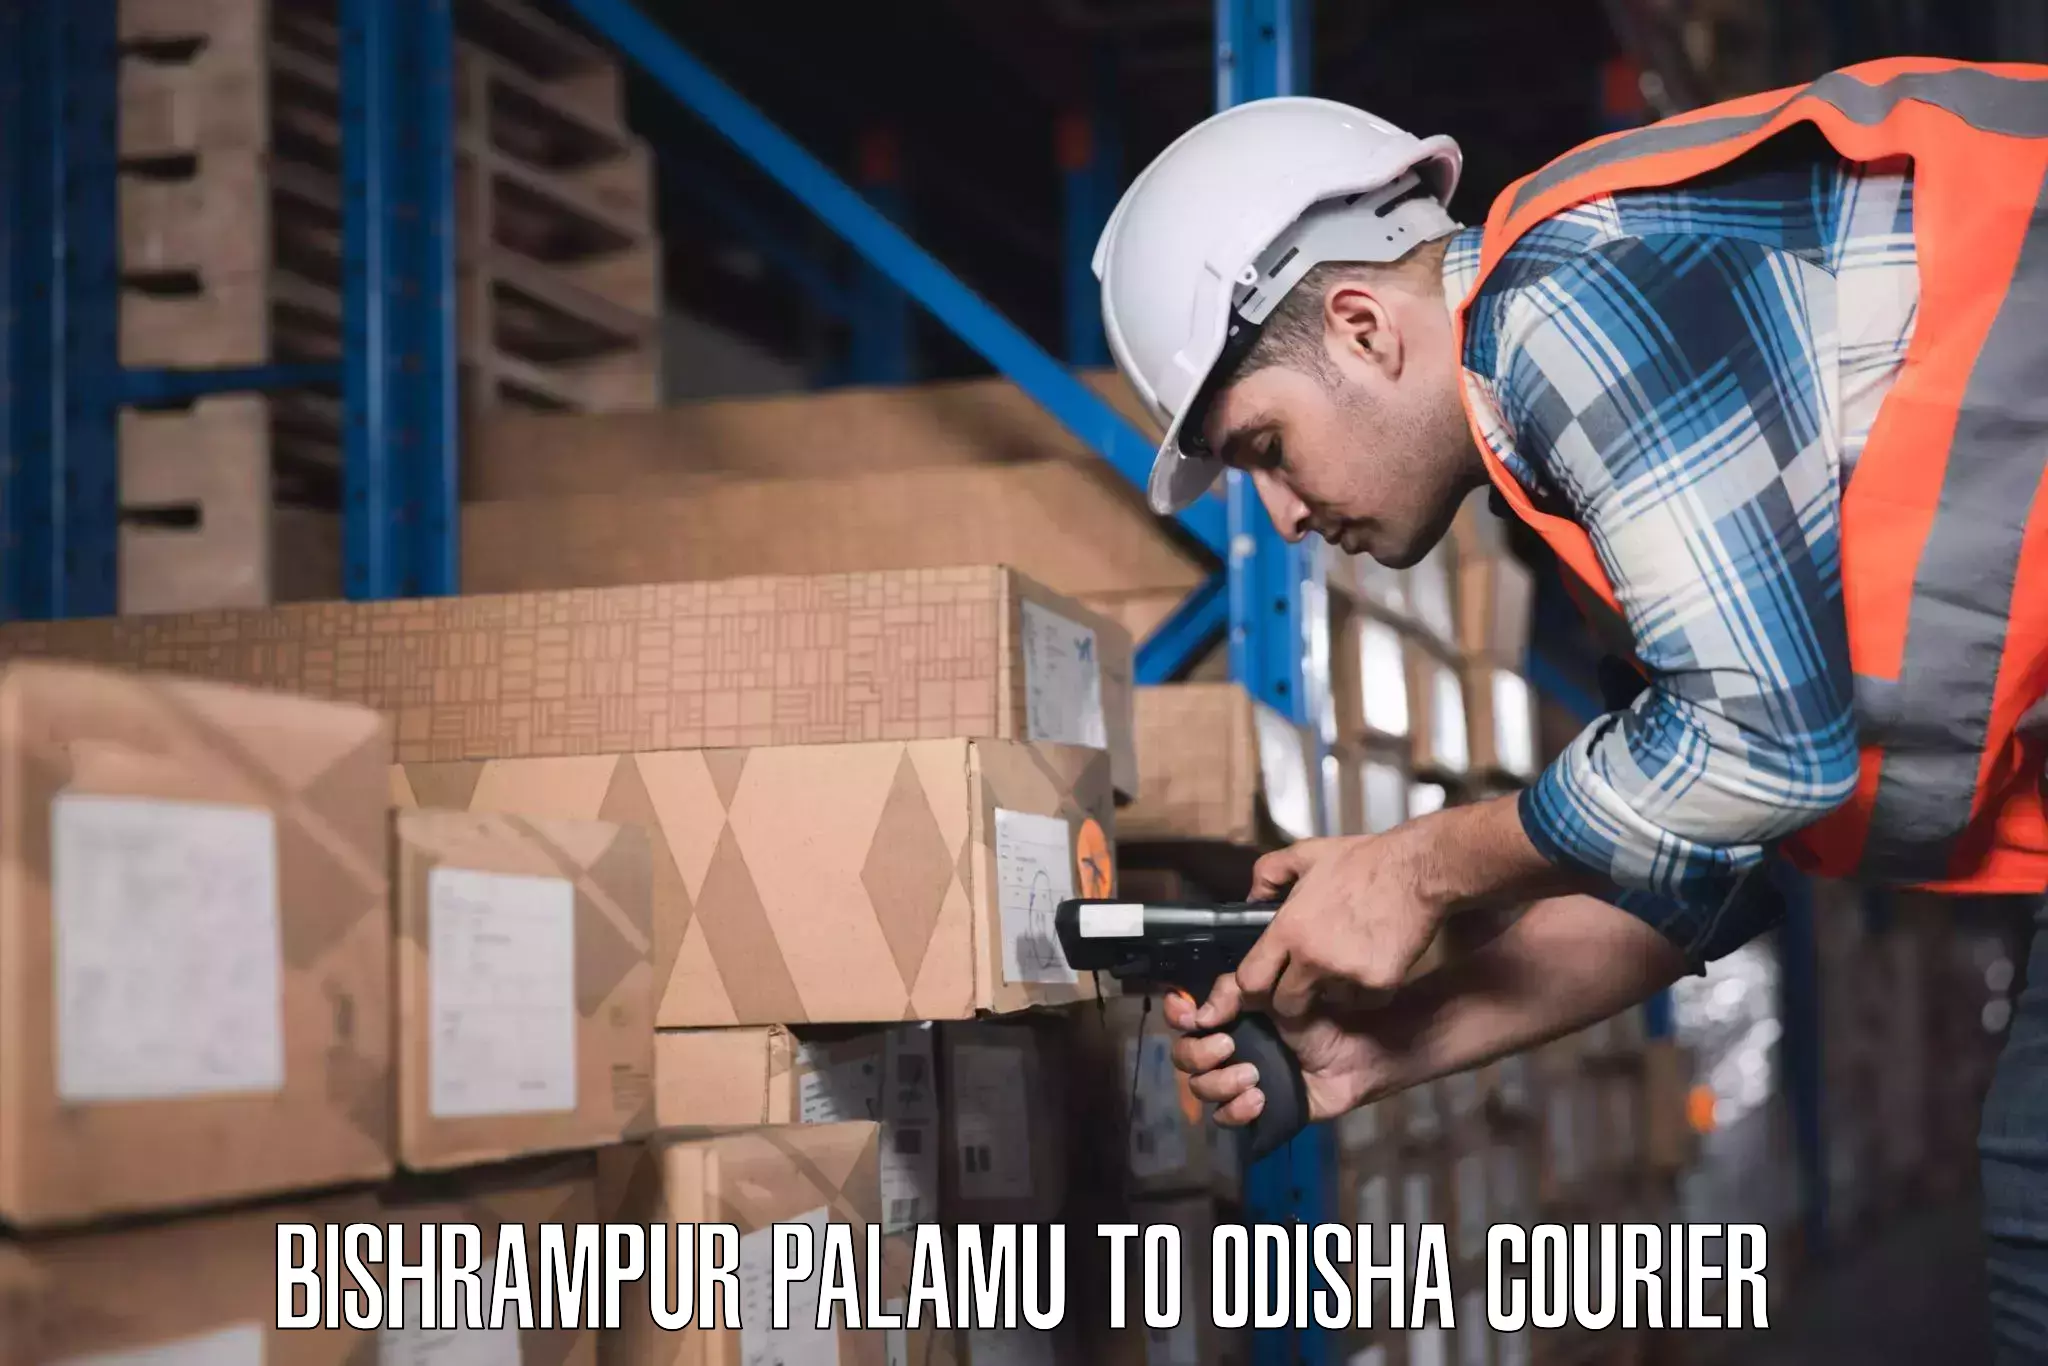 Luggage shipping planner in Bishrampur Palamu to Sinapali